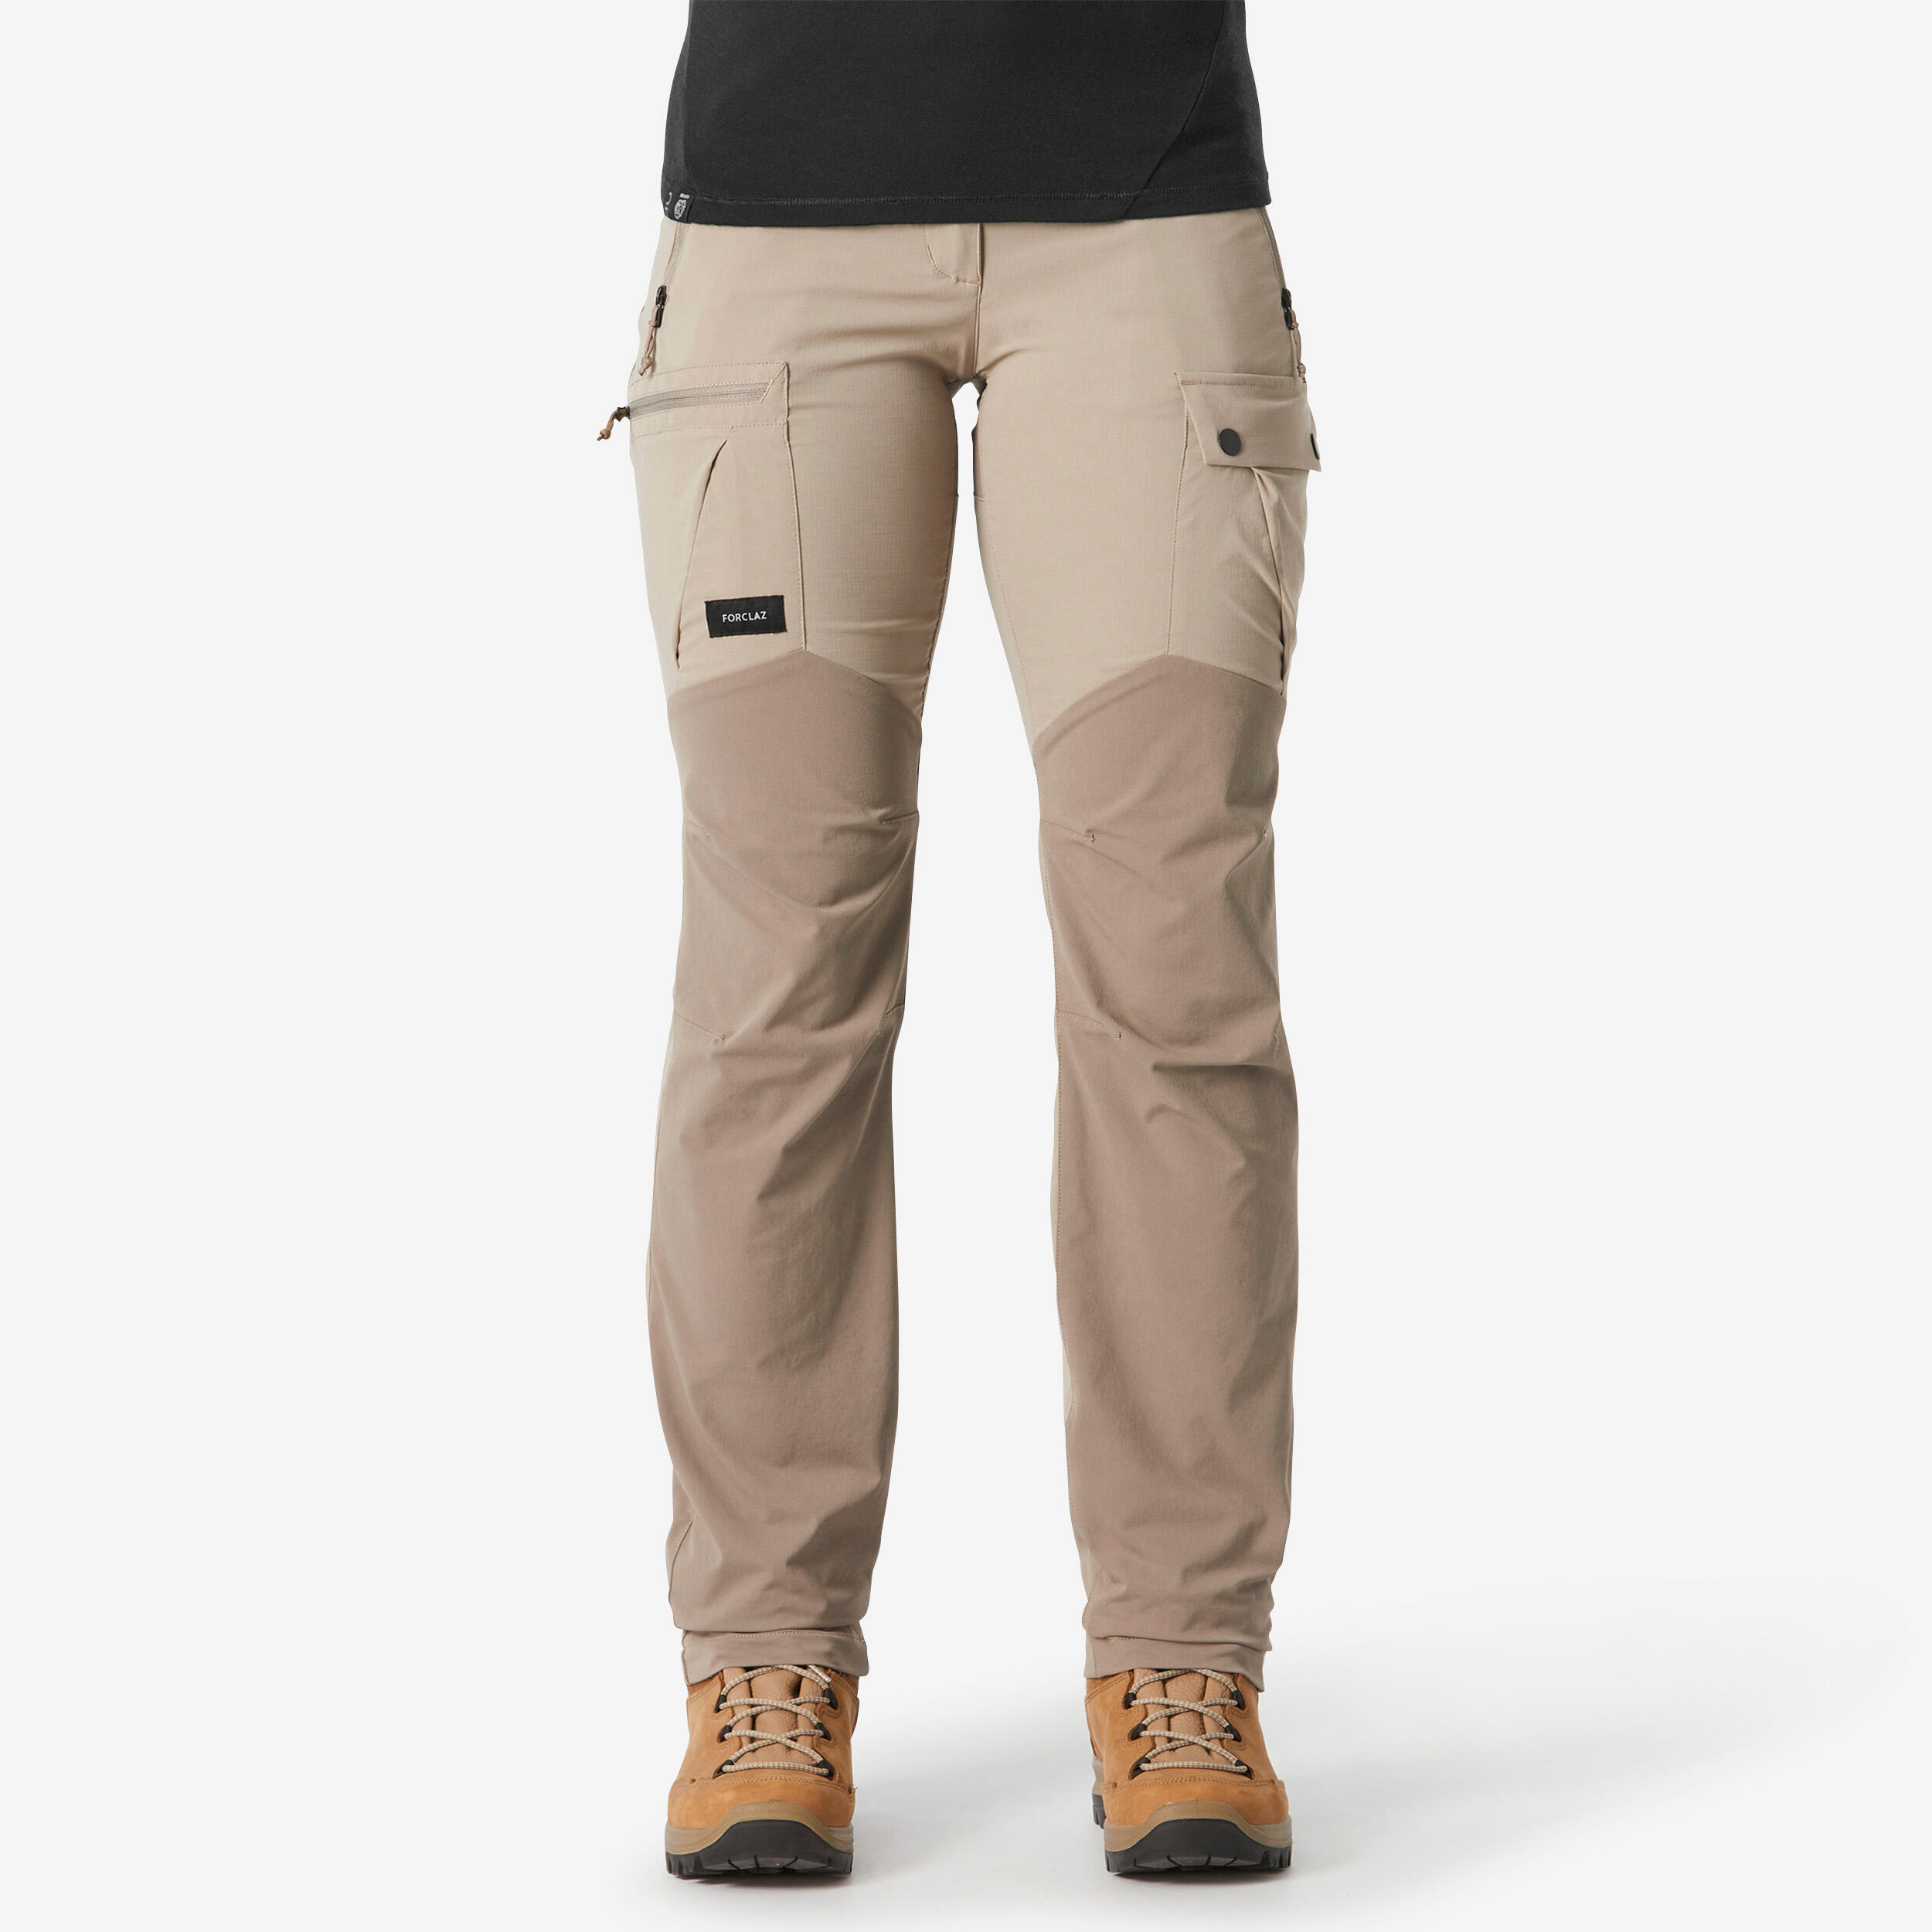 FORCLAZ Women’s Mountain Trekking Trousers - MT500